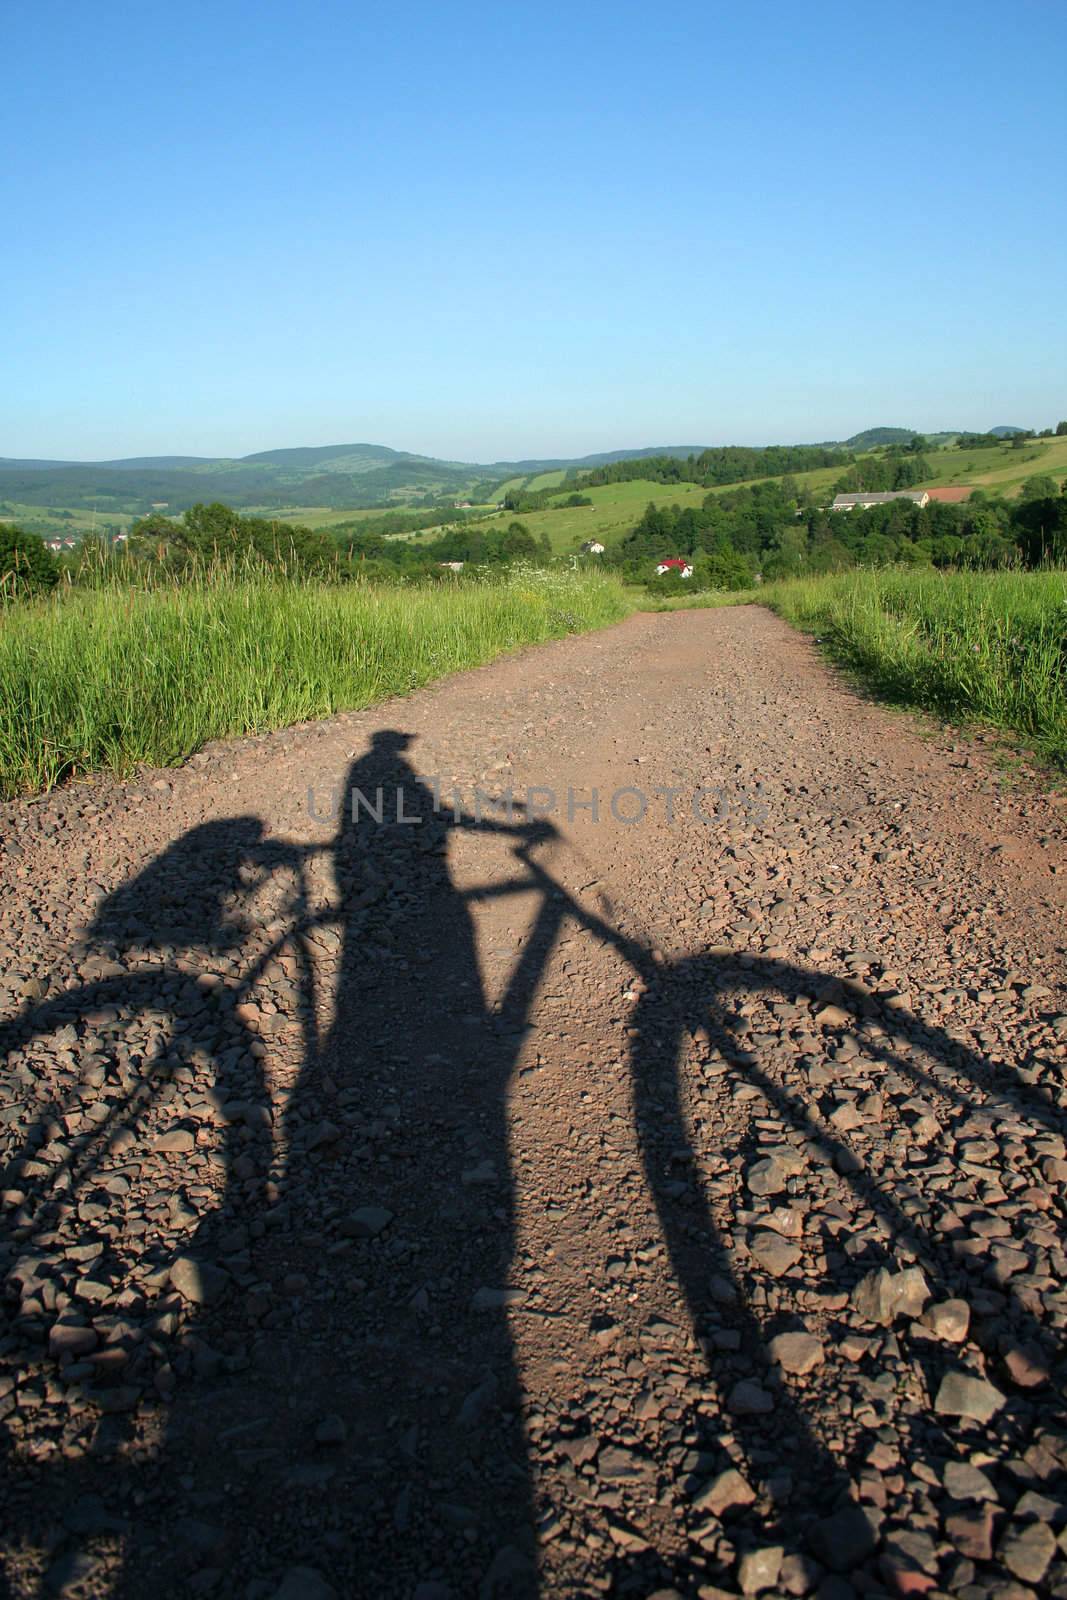 bicyclist's shadow by furzyk73